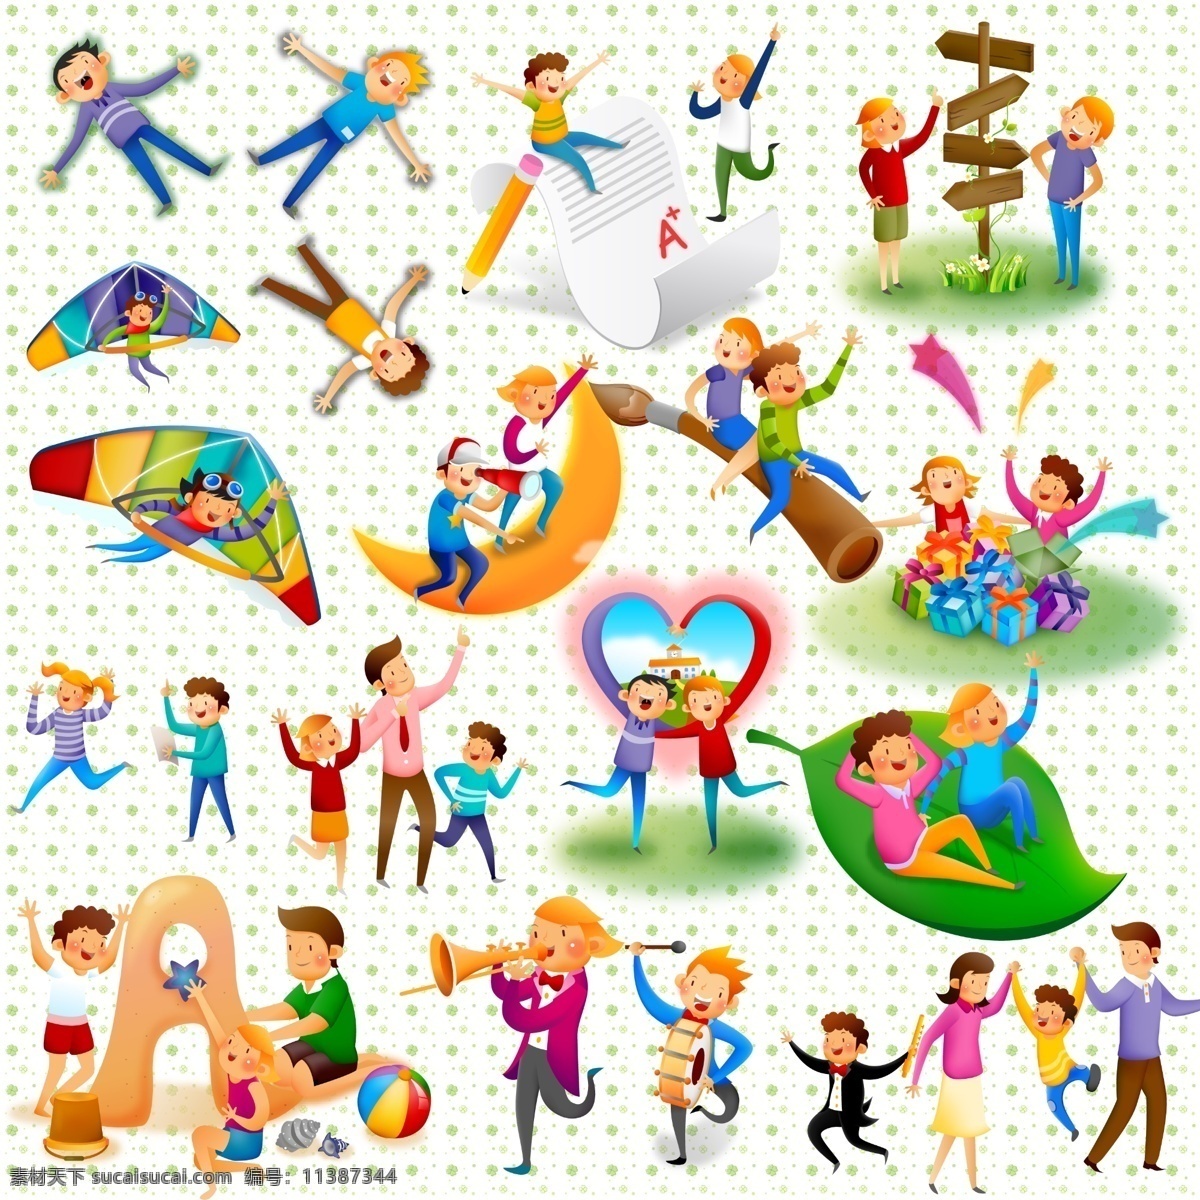 卡通快乐儿童 模版下载 儿童模板下载 卡通 快乐 儿童图片下载 儿童 可爱 暑假 游玩 玩耍 教育 源文件